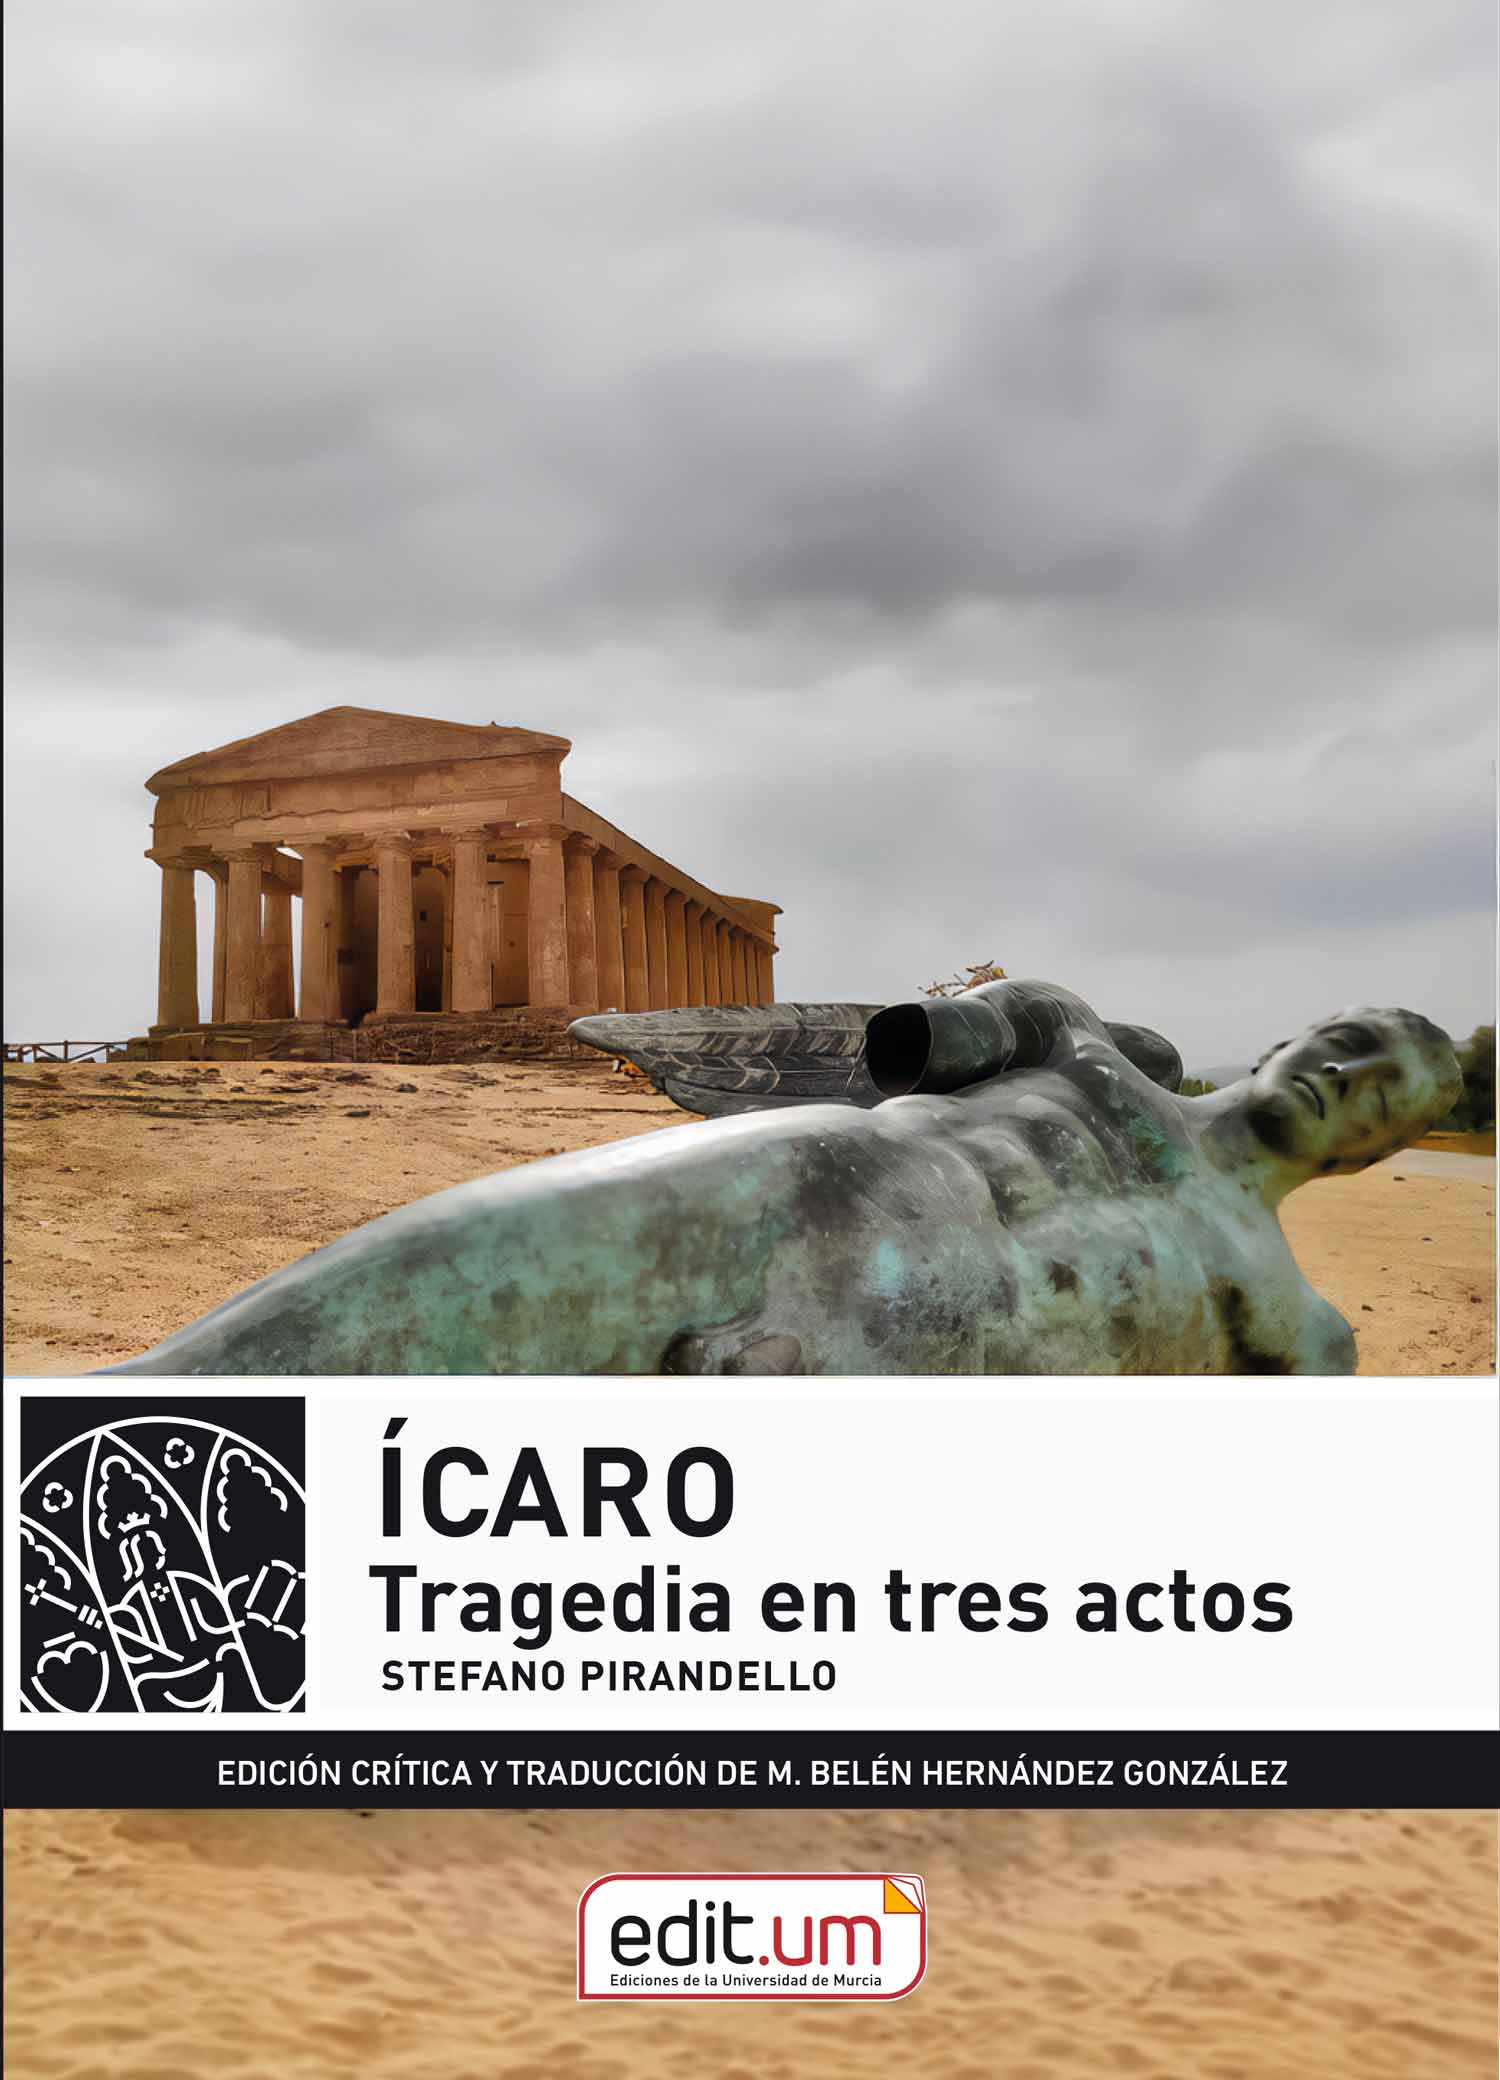 Imagen de portada del libro Ícaro